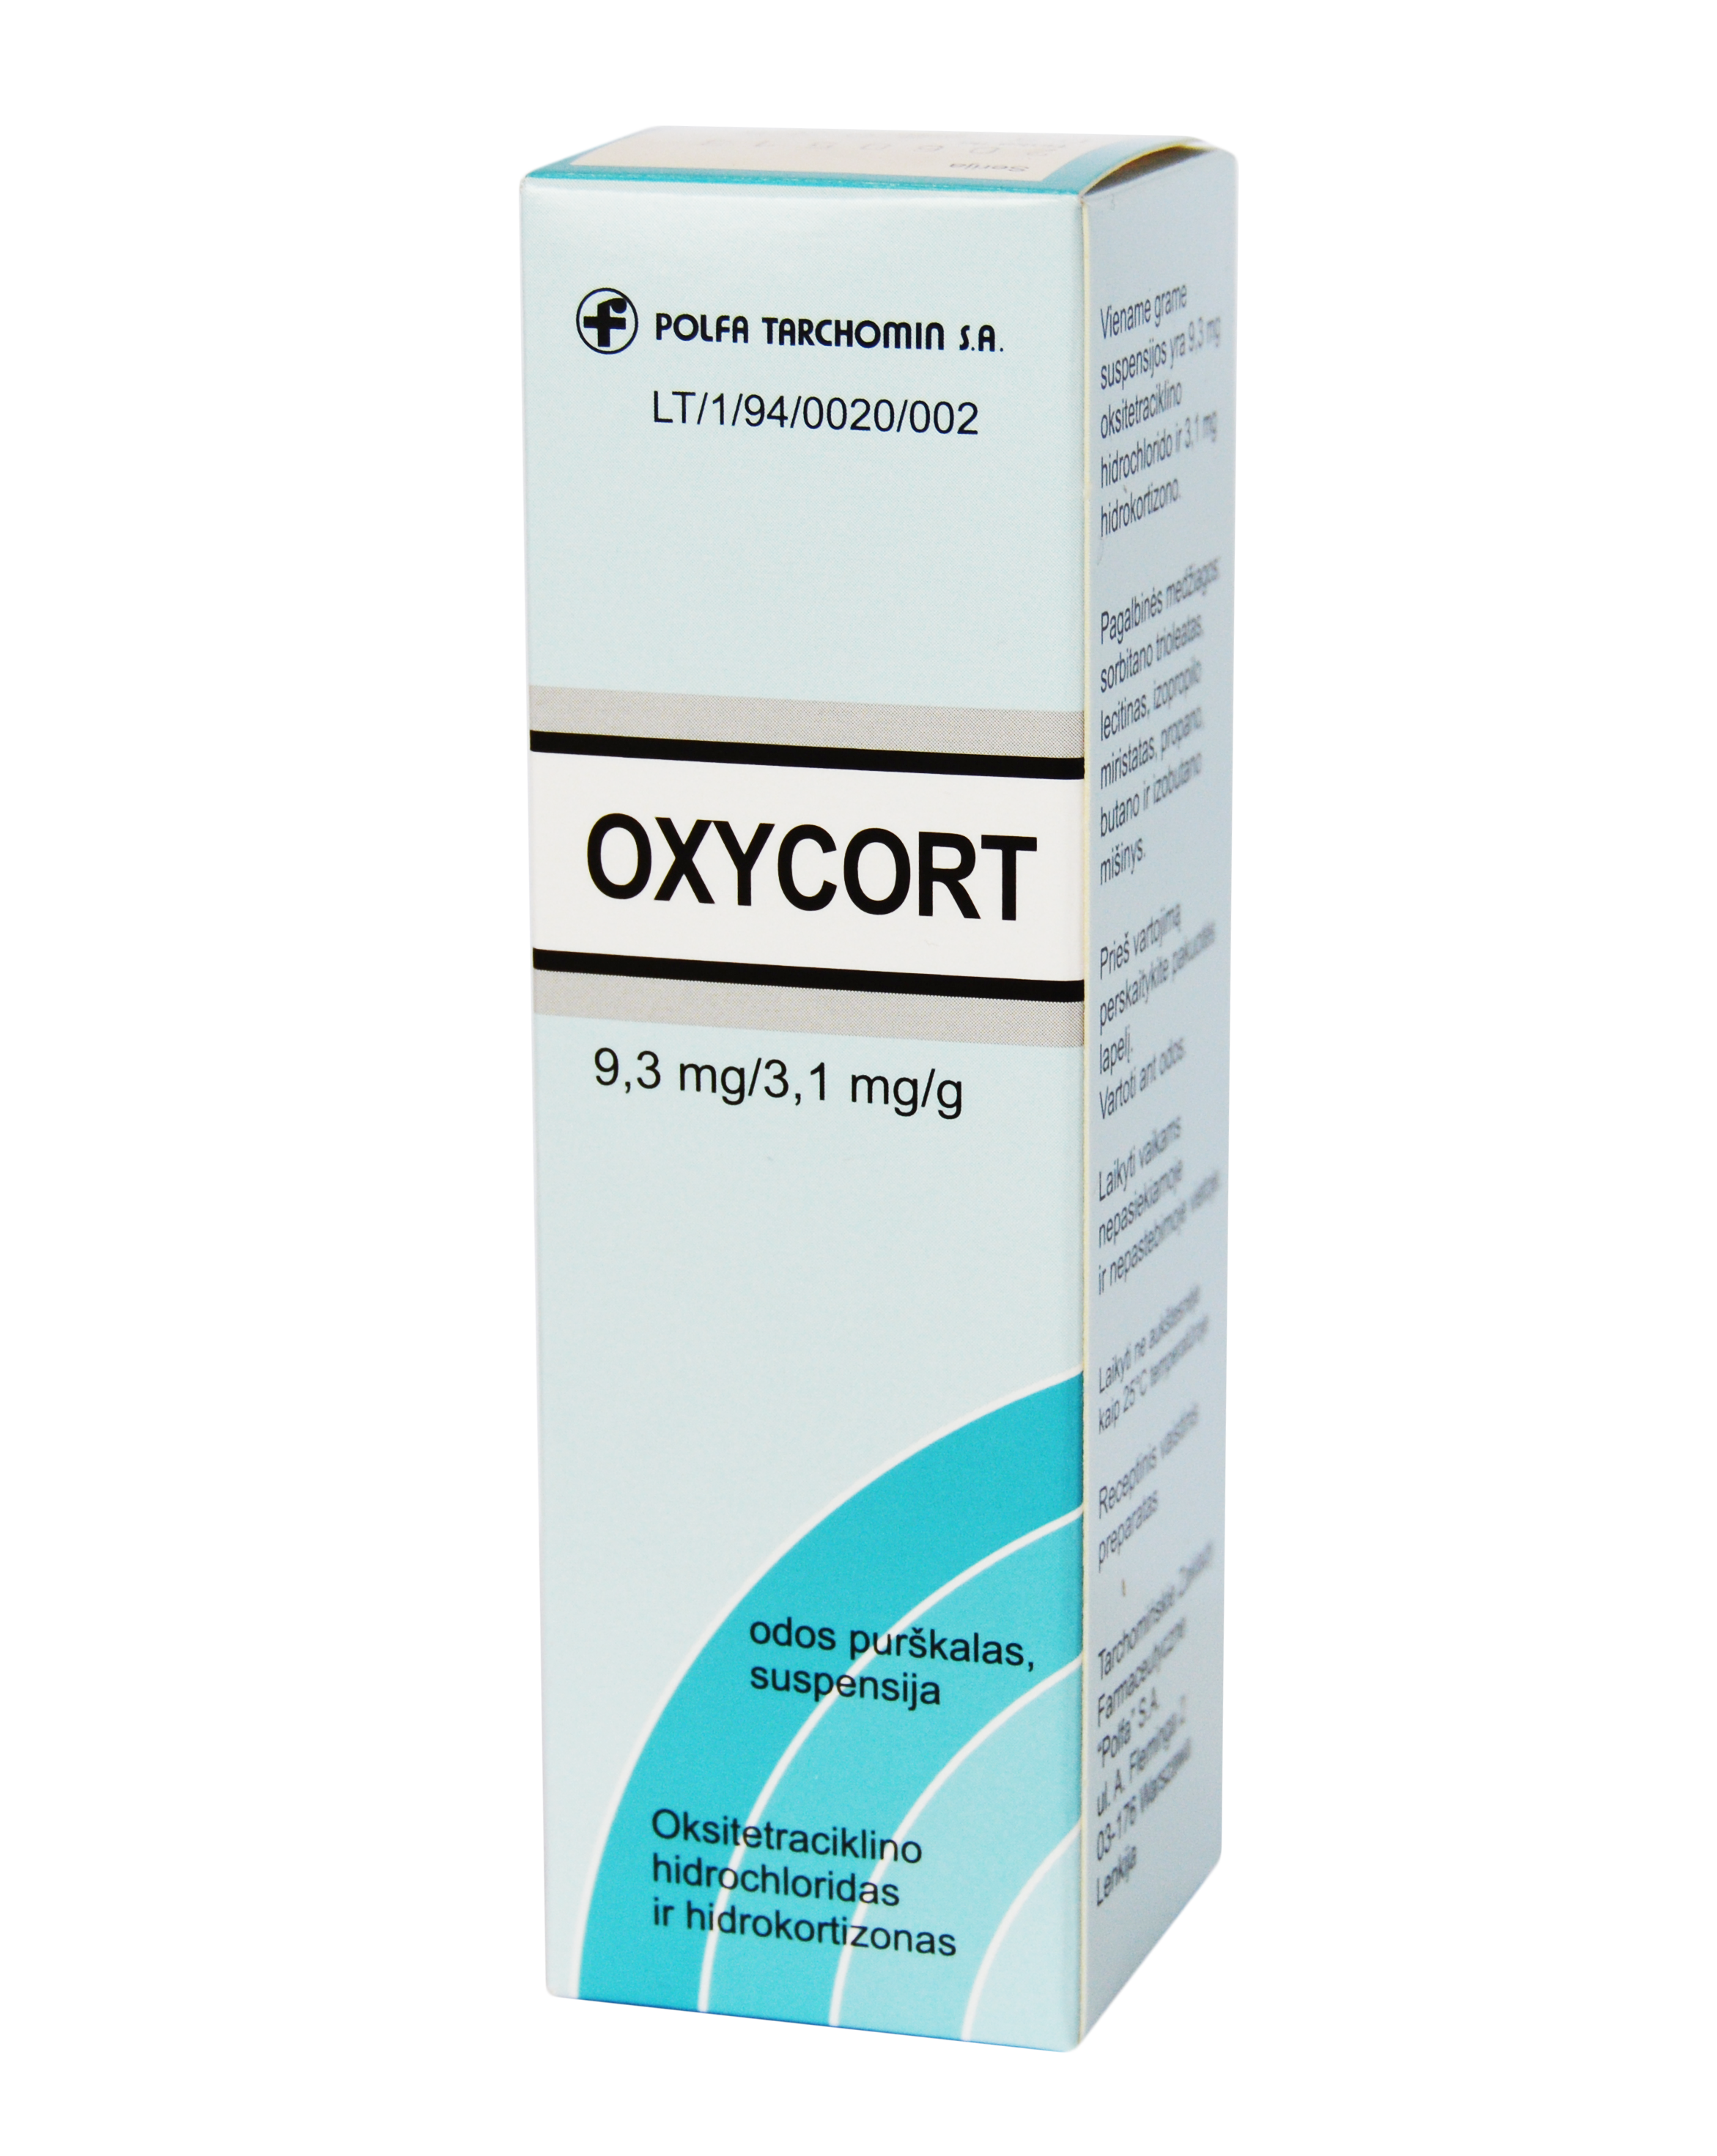 Oxycort - image 0